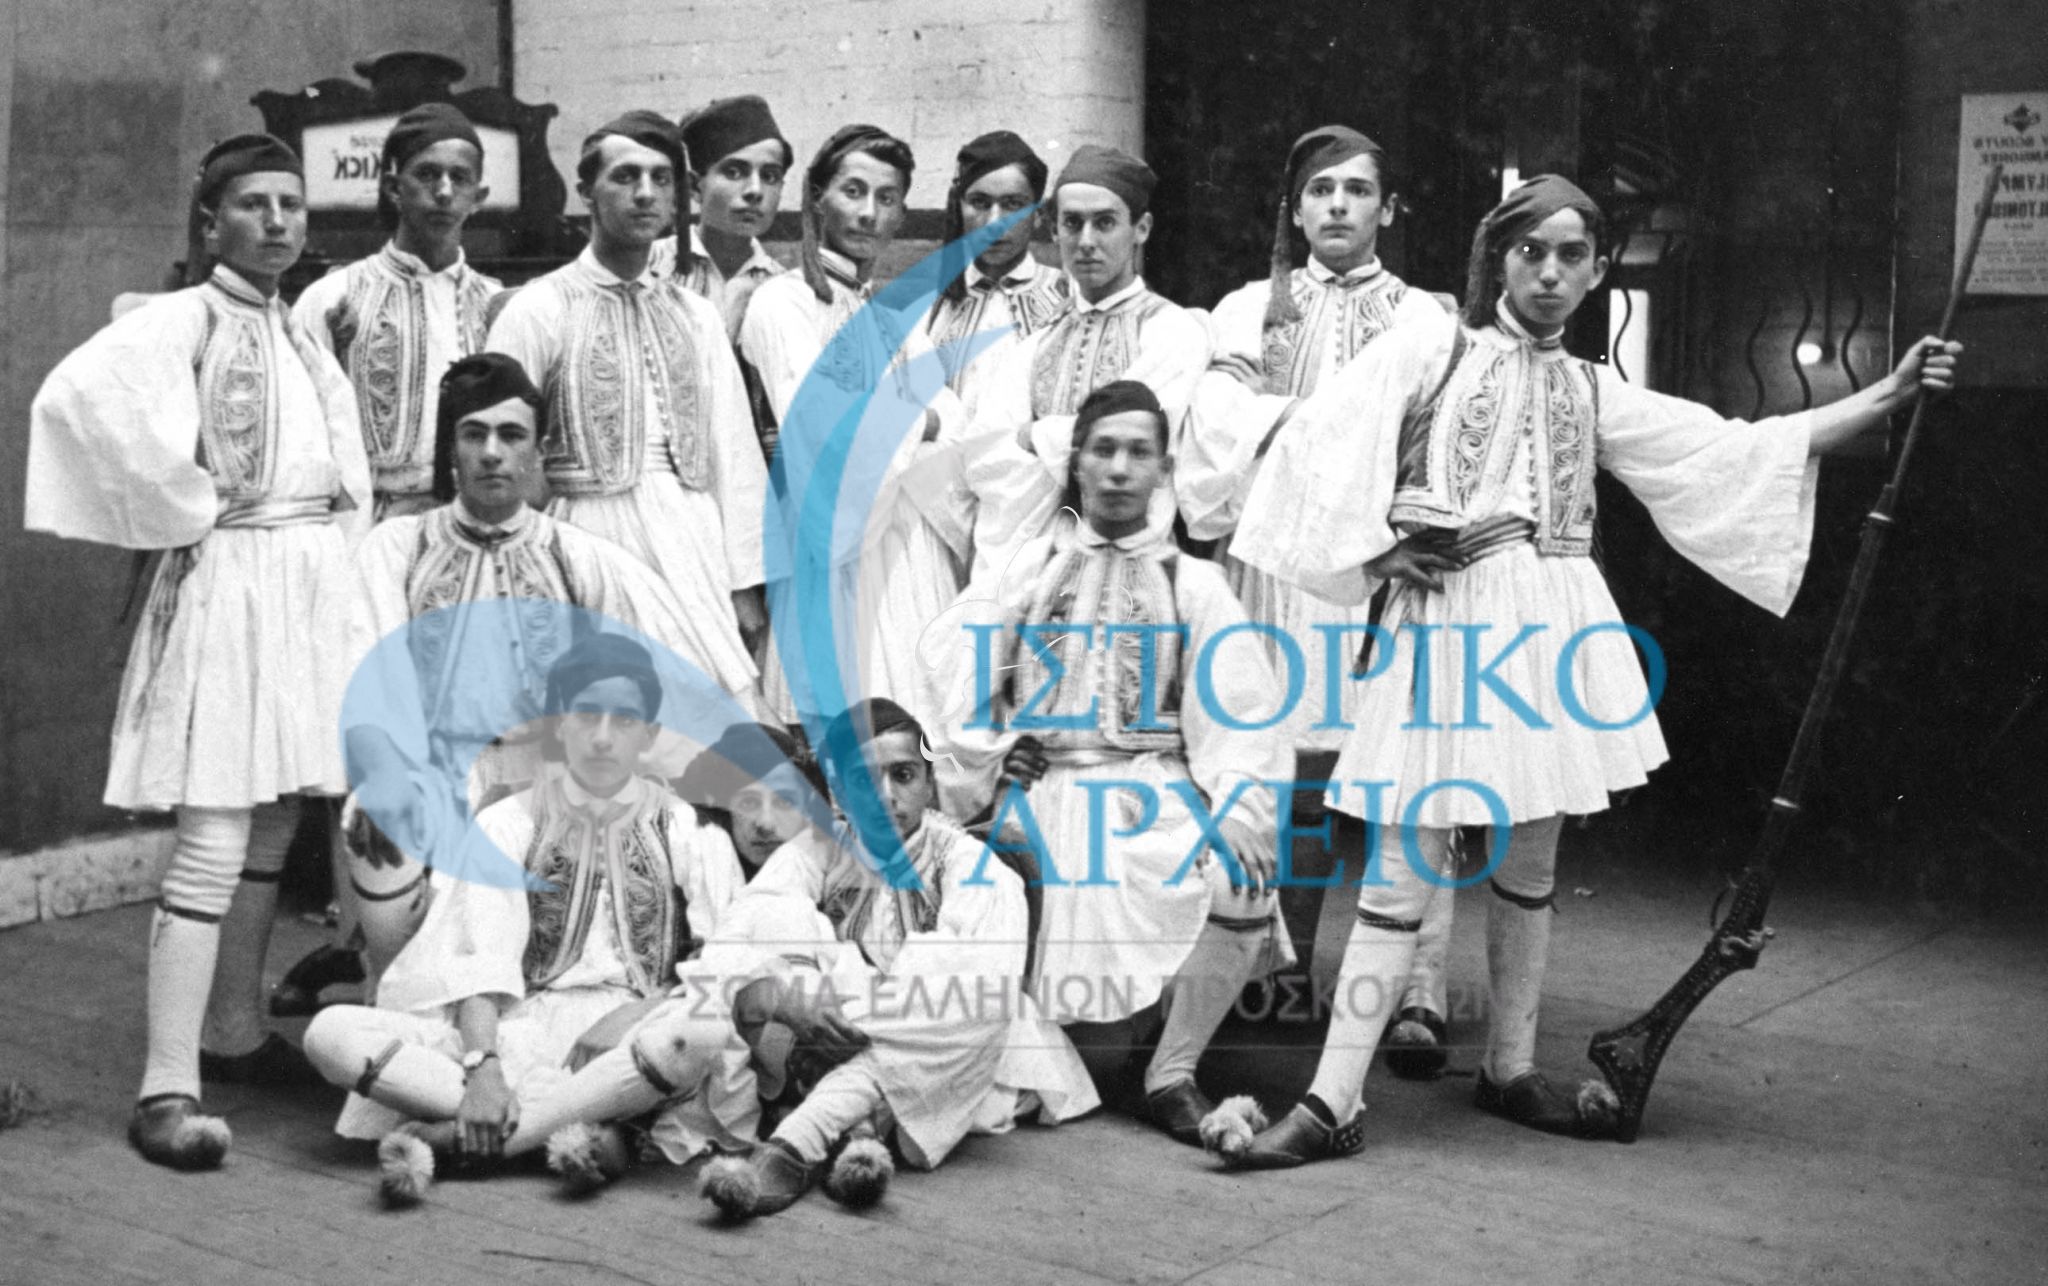 Η ελληνική προσκοπική αποστολή στο Τζάμπορη του Λονδίνου το 1920 φορώντας παραδοσιακές ενδυμασίες.